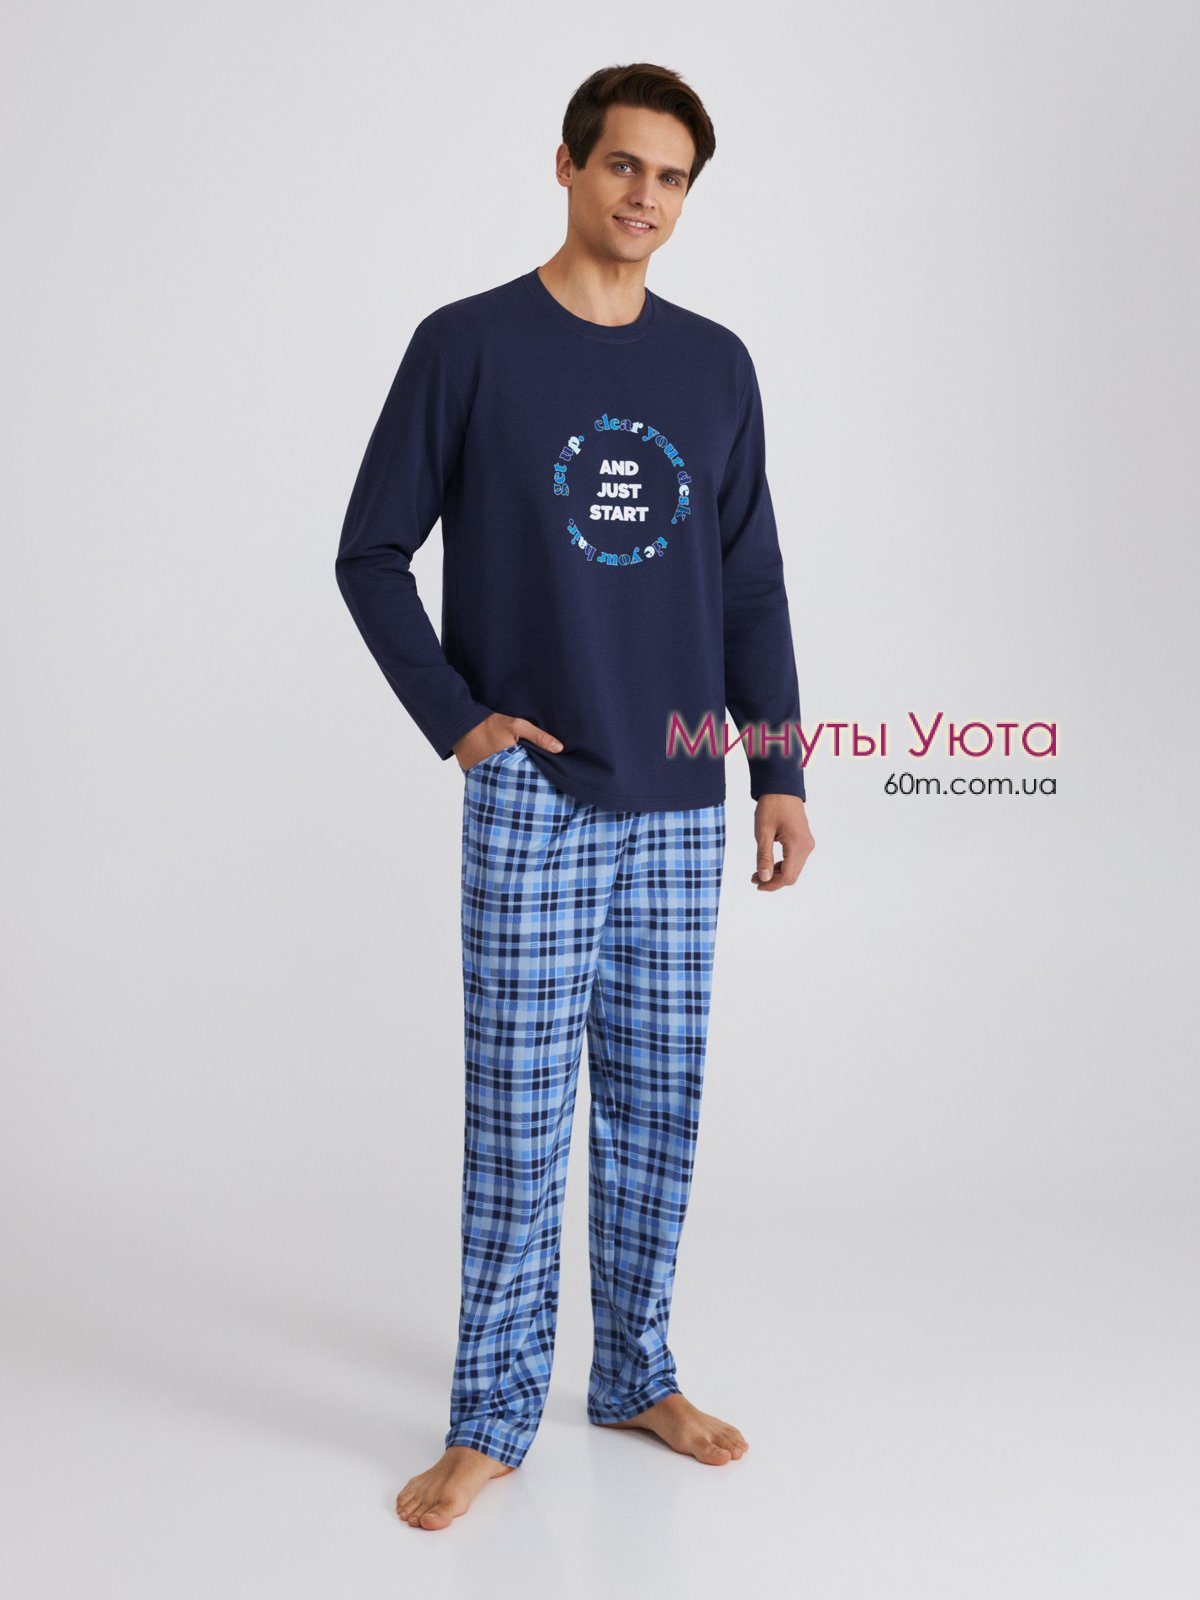 Мужская утепленная пижама с синей кофтой и голубыми клетчатыми брюками Ellen